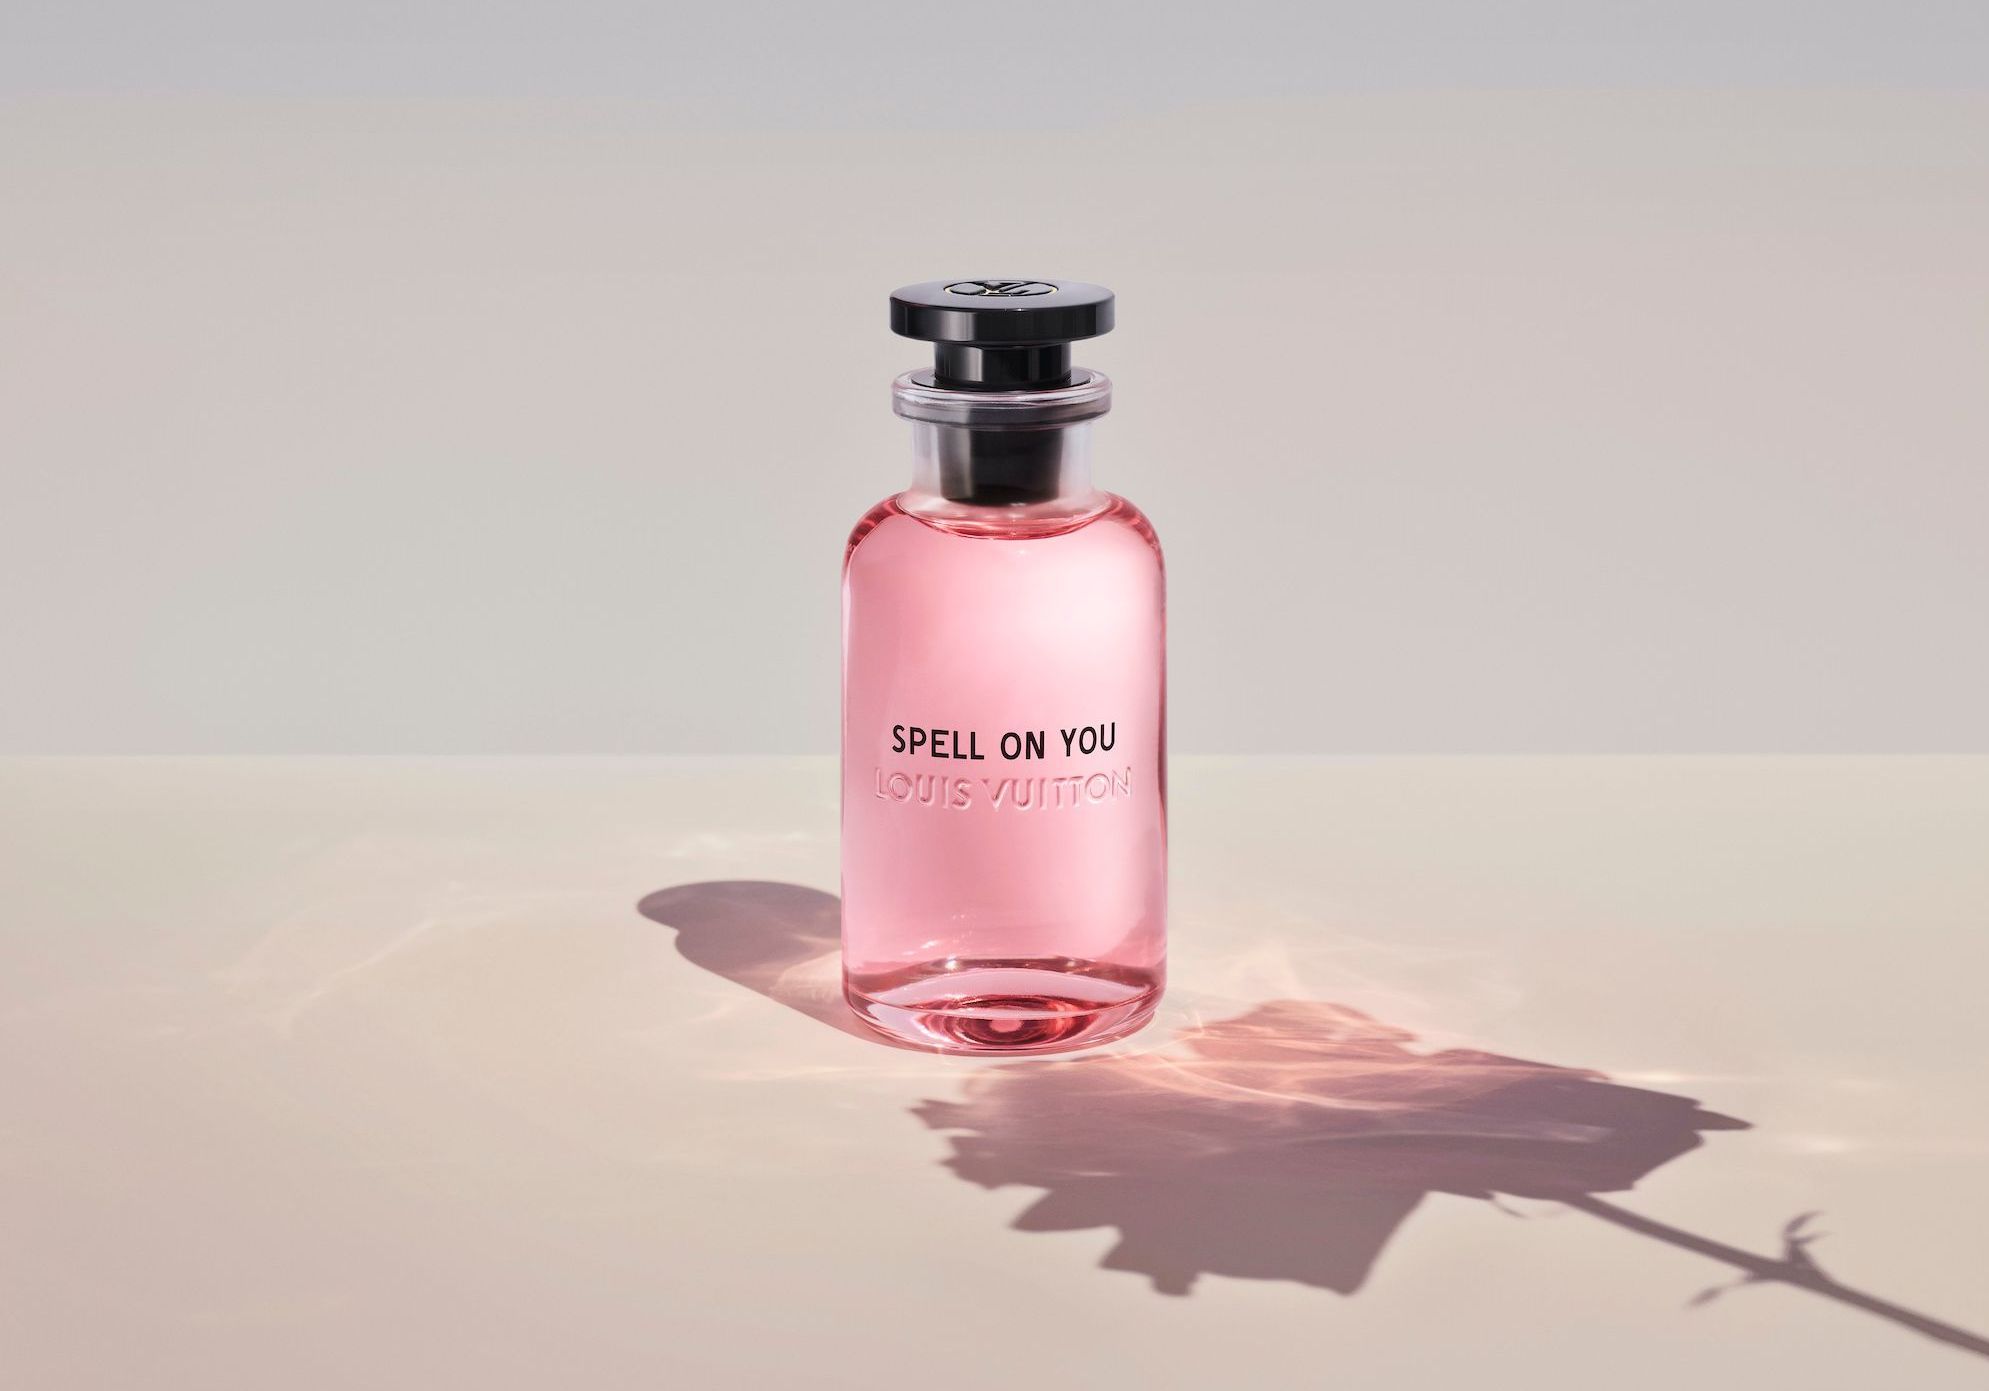 Fleur du Désert Louis Vuitton parfum - un parfum pour homme et femme